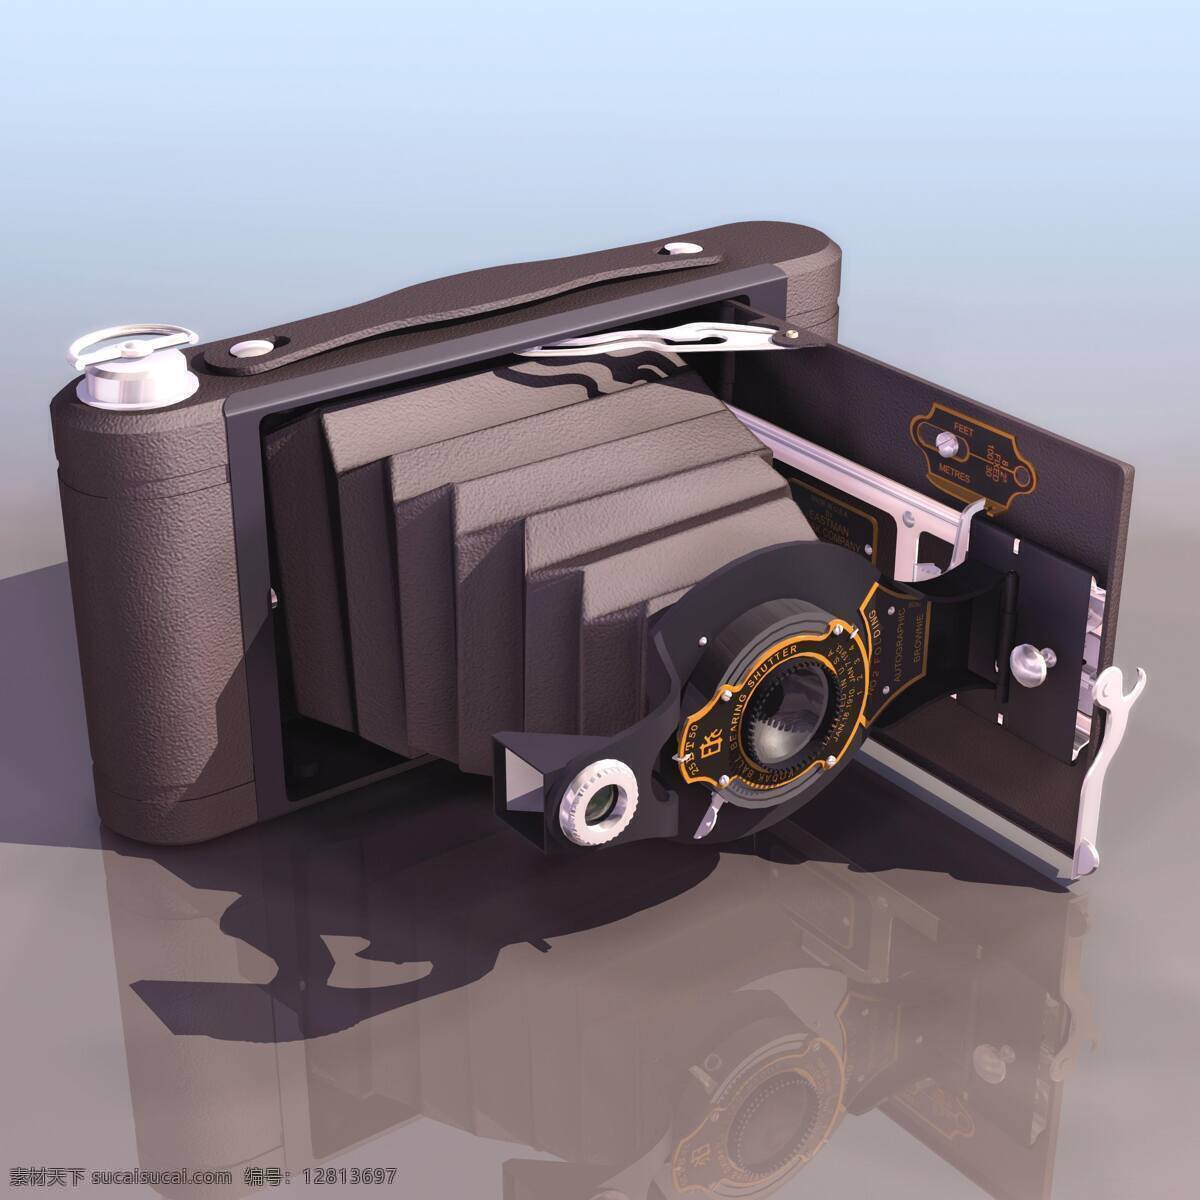 3d设计 3d设计图片 3d作品 工业设计 老式 立体模型 照相机 黑白胶片 设计素材 模板下载 仿真模型 逼真效果图 三维 场景 视觉 图 psd源文件